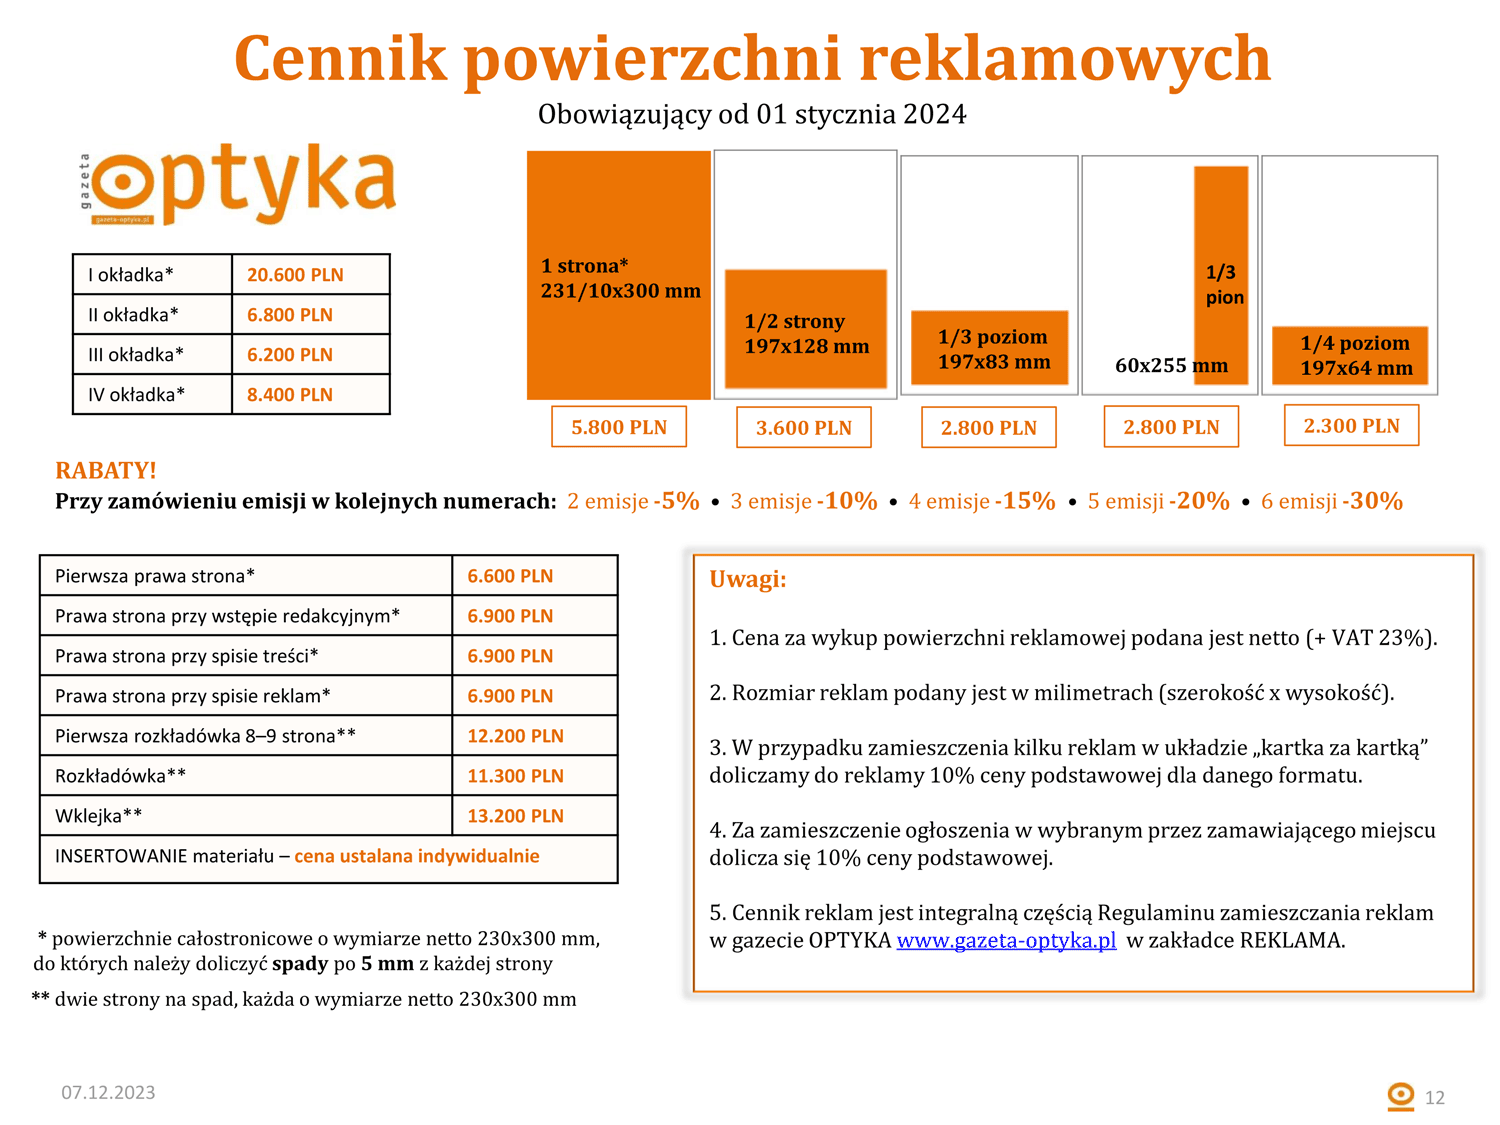 Gazeta OPTYKA MediaKit OK 12